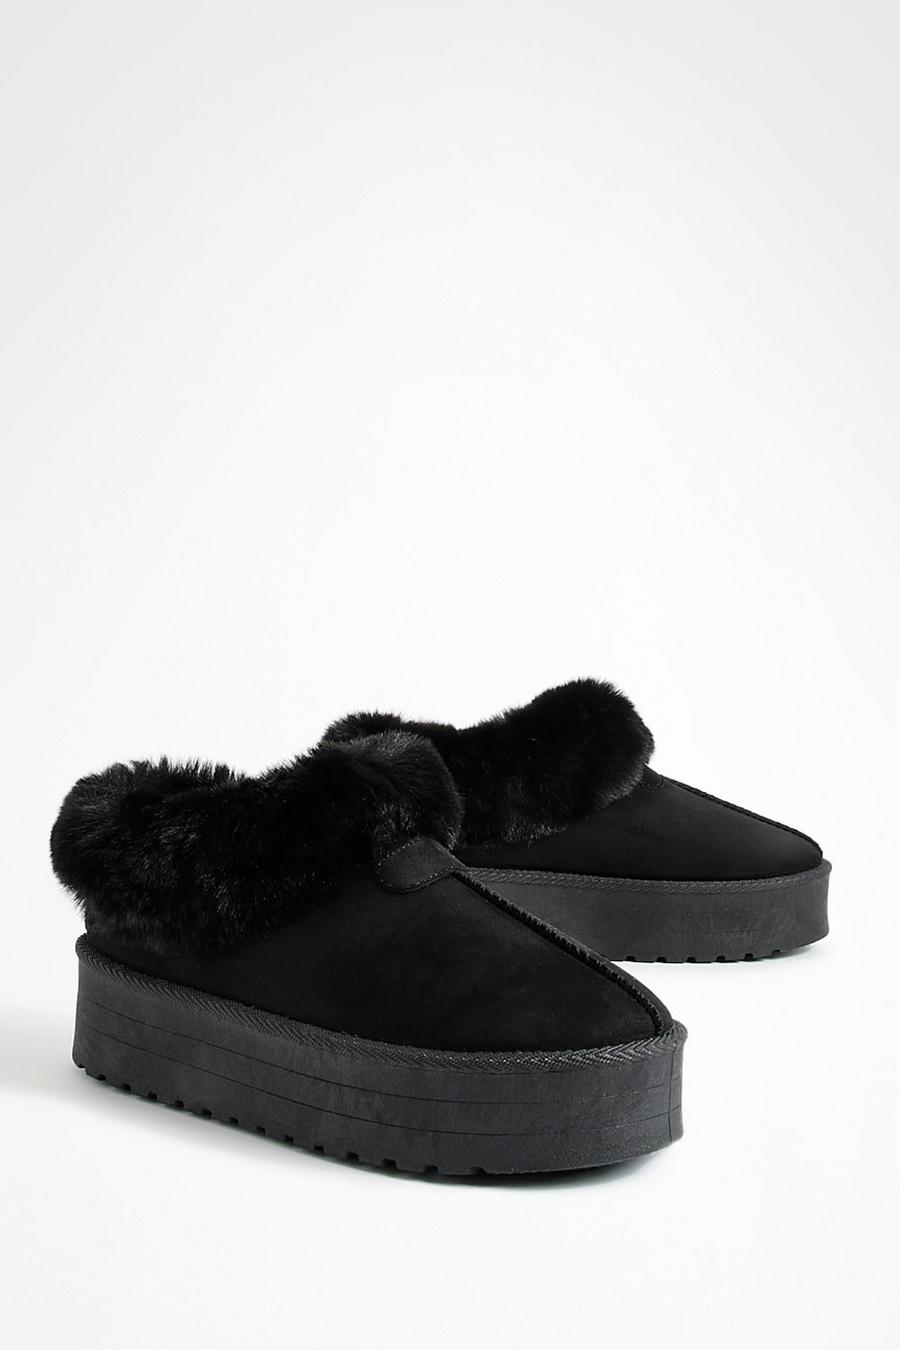 Black Faux Fur Platform Slip On Cozy Mules